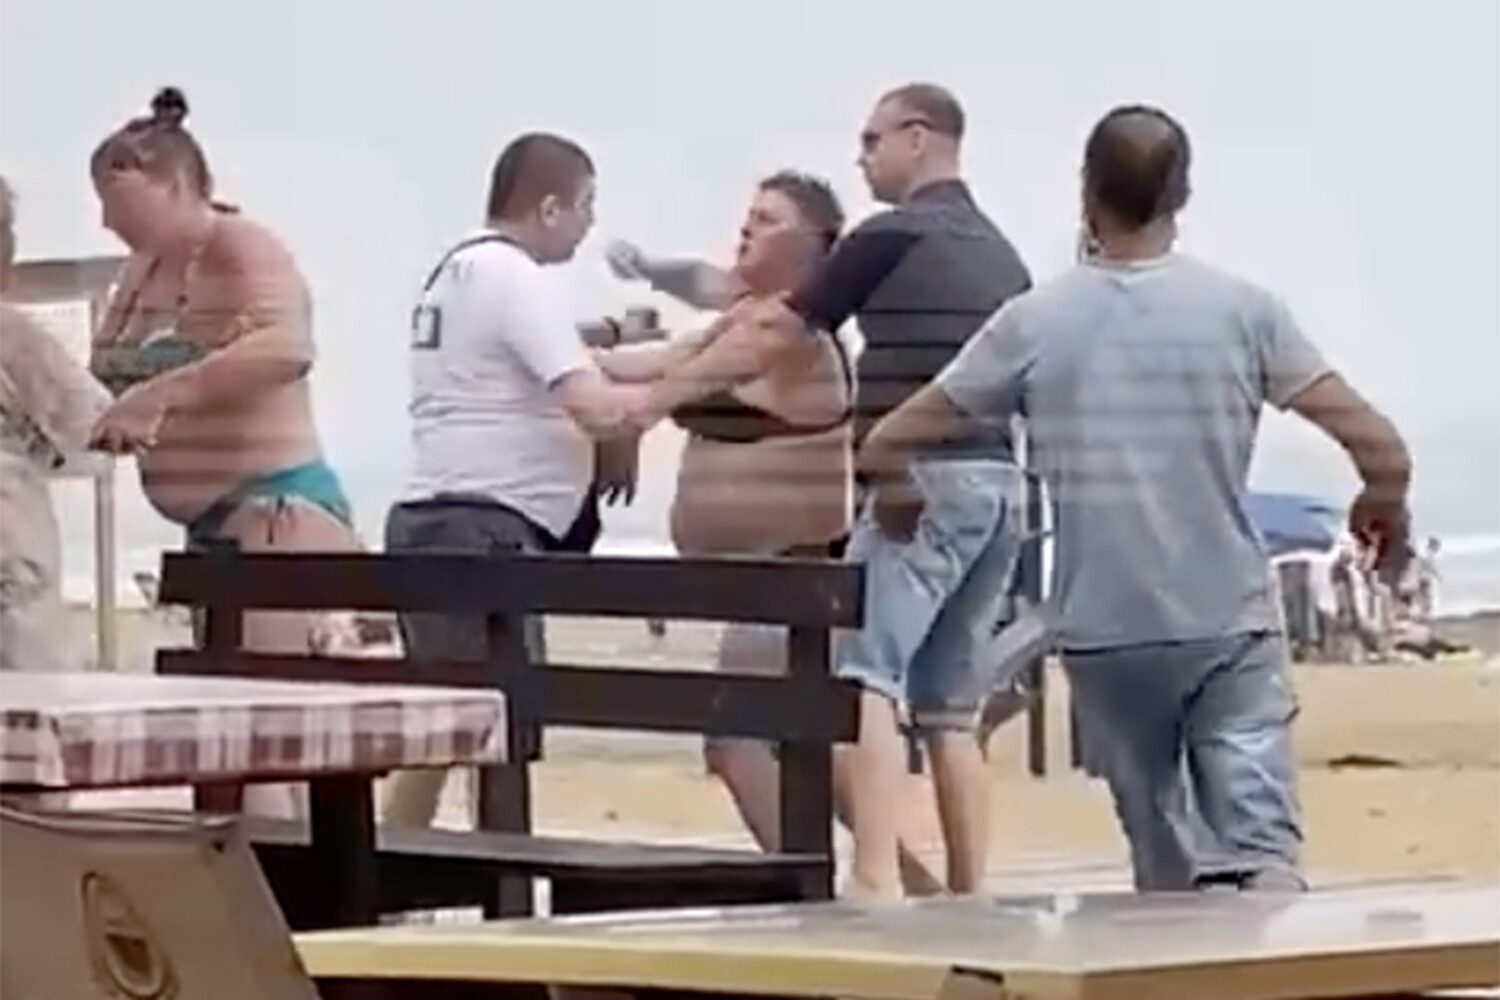 Секс на пляже в Ливадии стоил жителю Владивостока семьи | NewsBoxtv